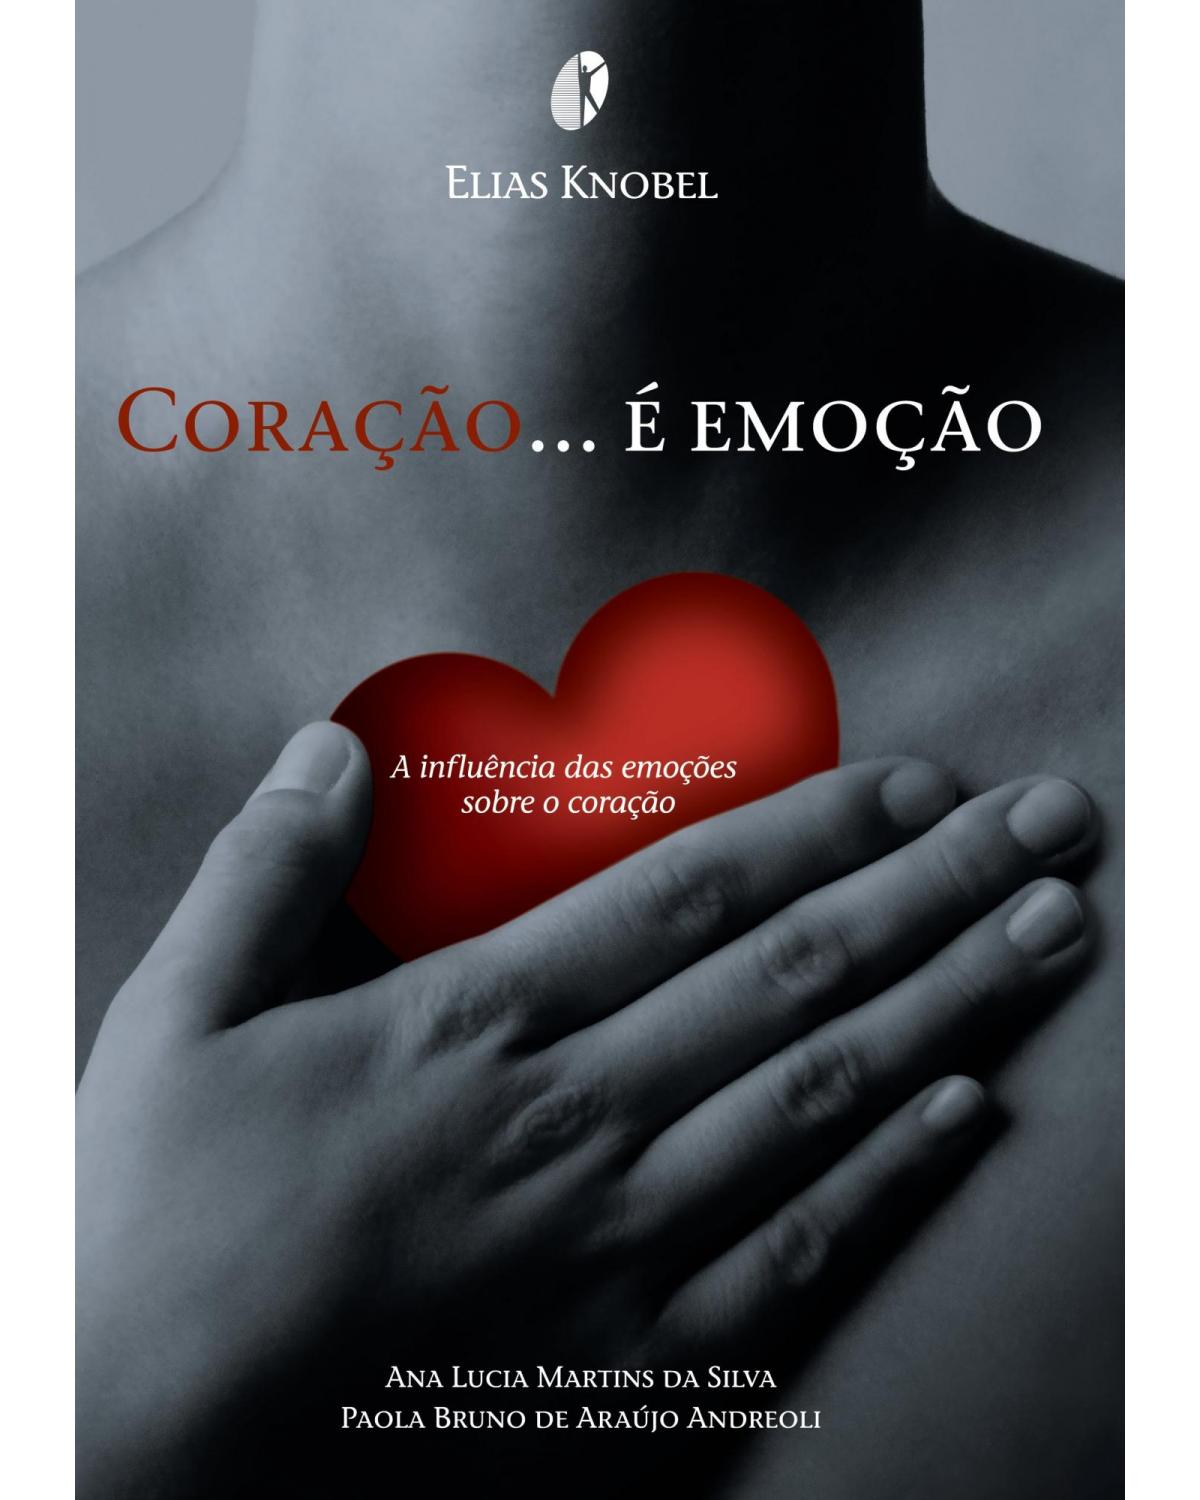 Coração é emoção - a influência das emoções sobre o coração - 1ª Edição | 2010